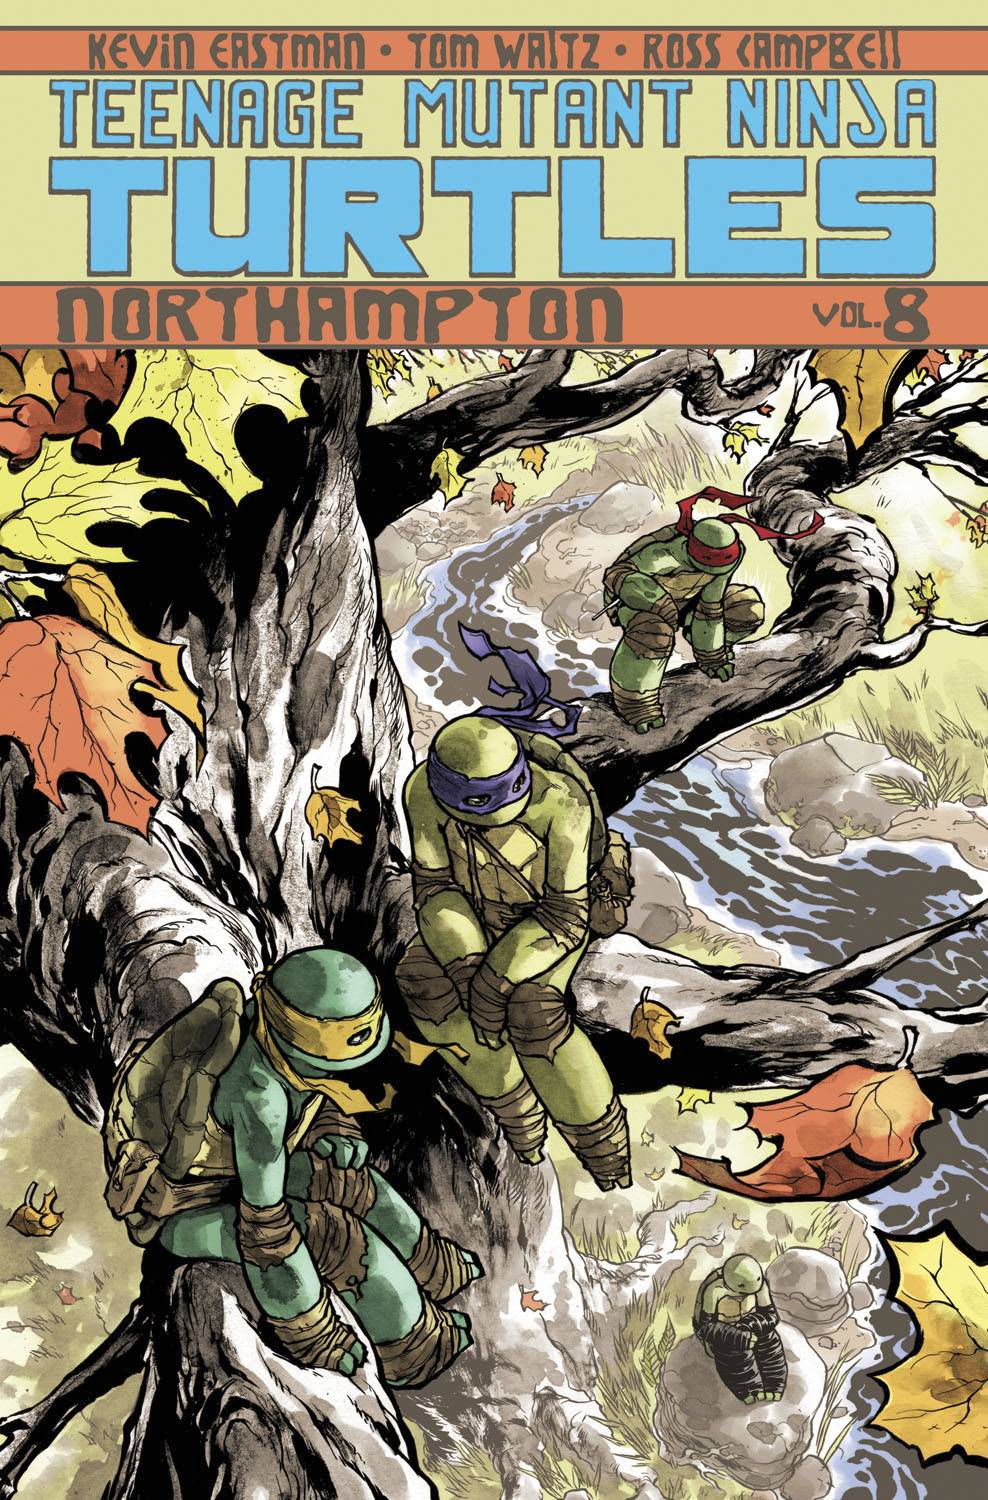 Teenage Mutant Ninja Turtles Ongoing Graphic Novel Volume 8 Northampton